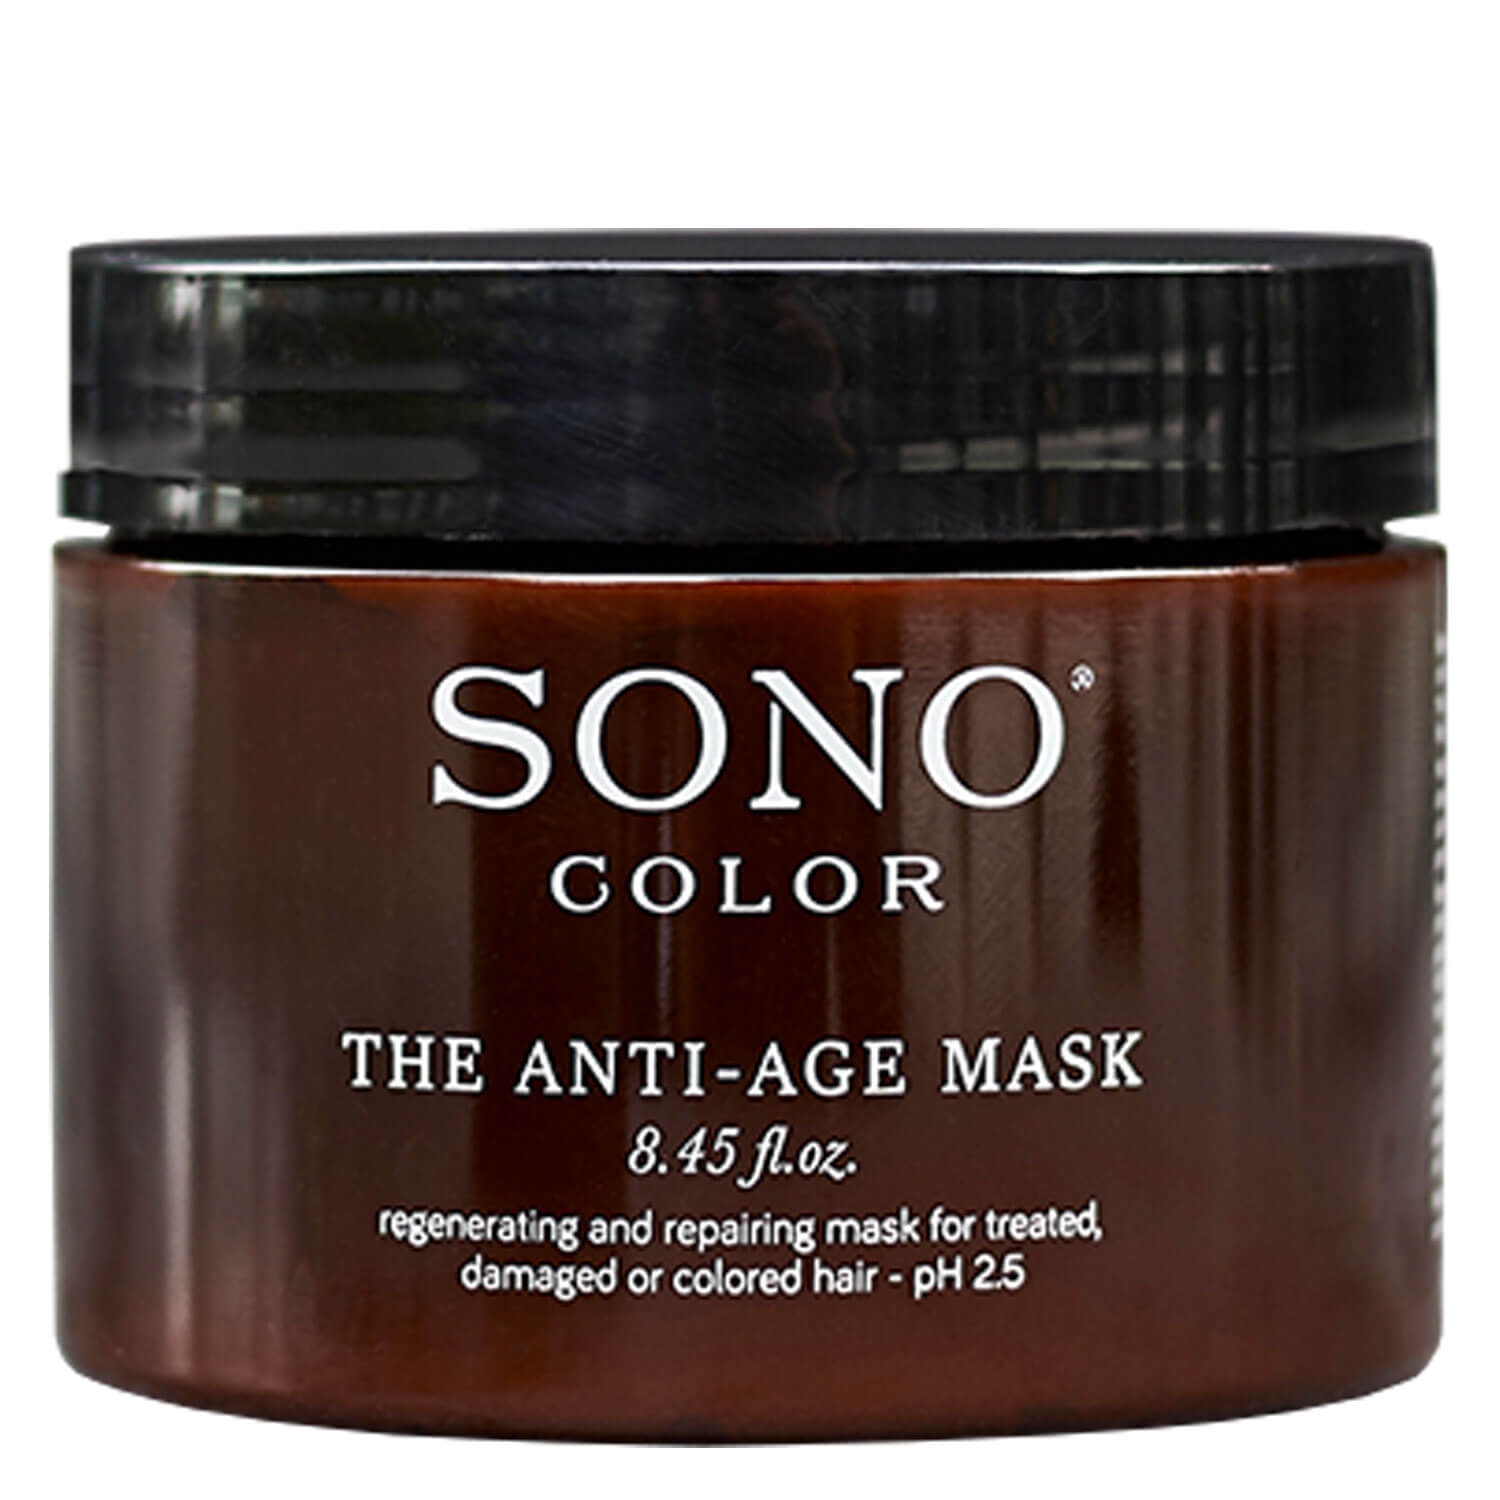 Produktbild von SONO Color - The Anti-Age Mask